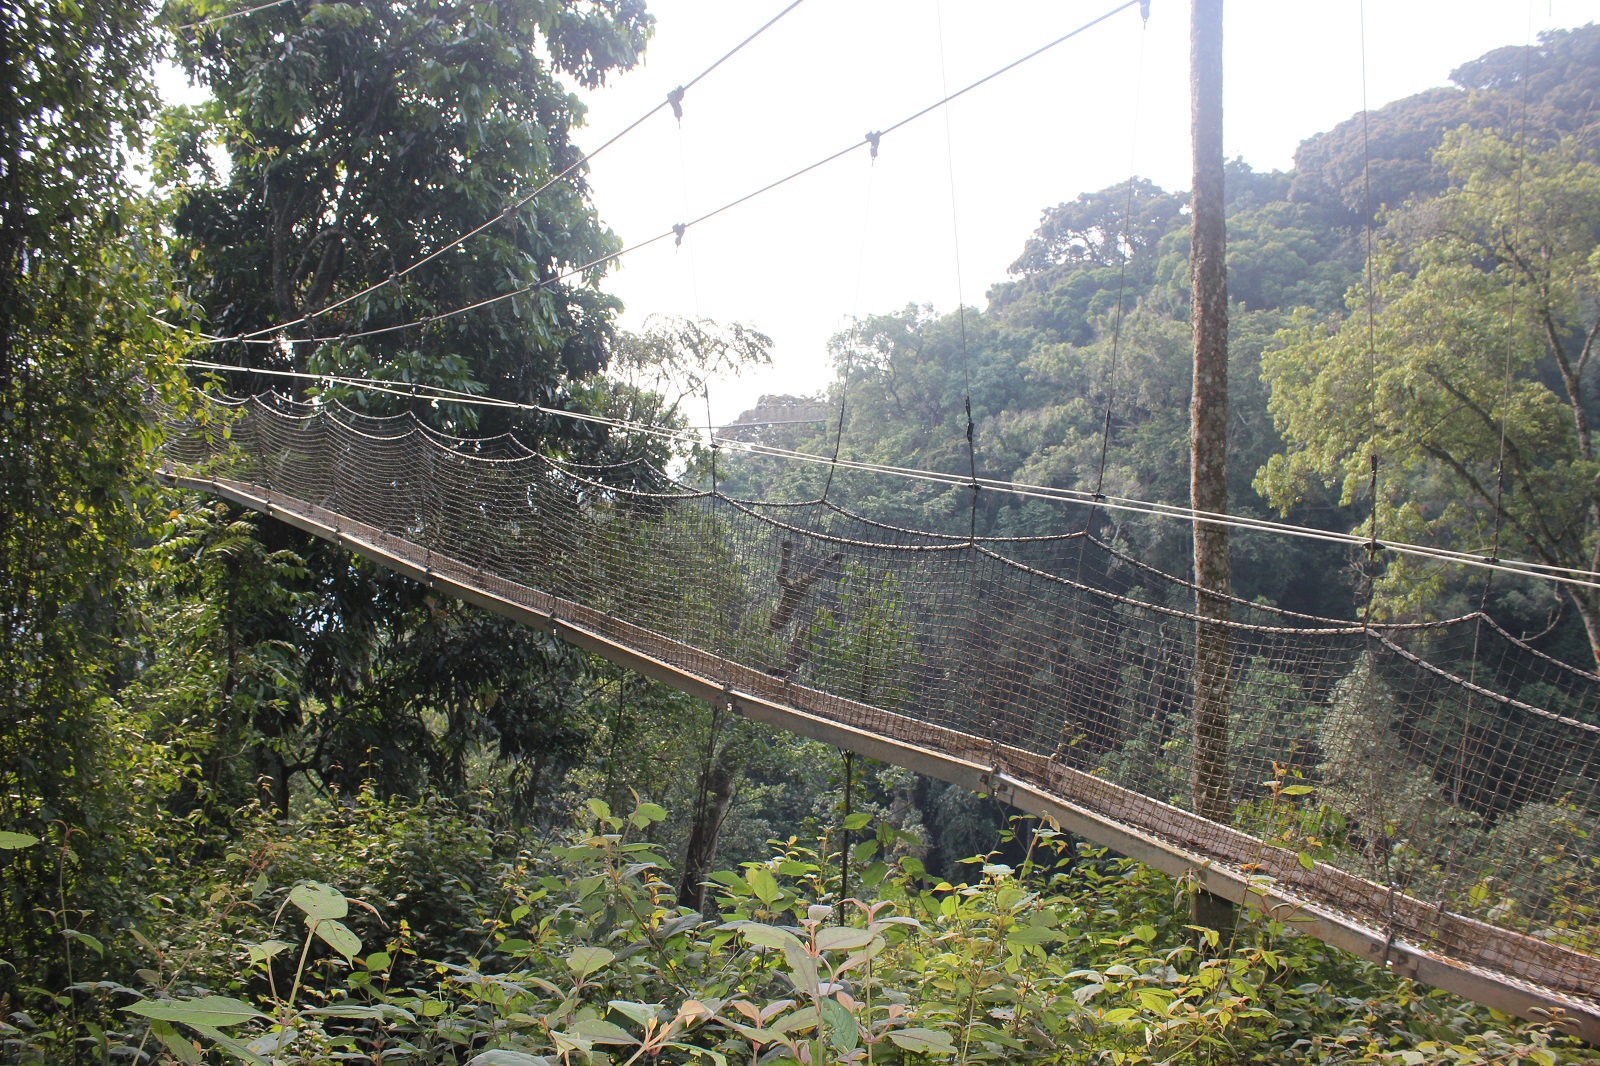 Suspension bridge in Rwanda's rainforest canopy